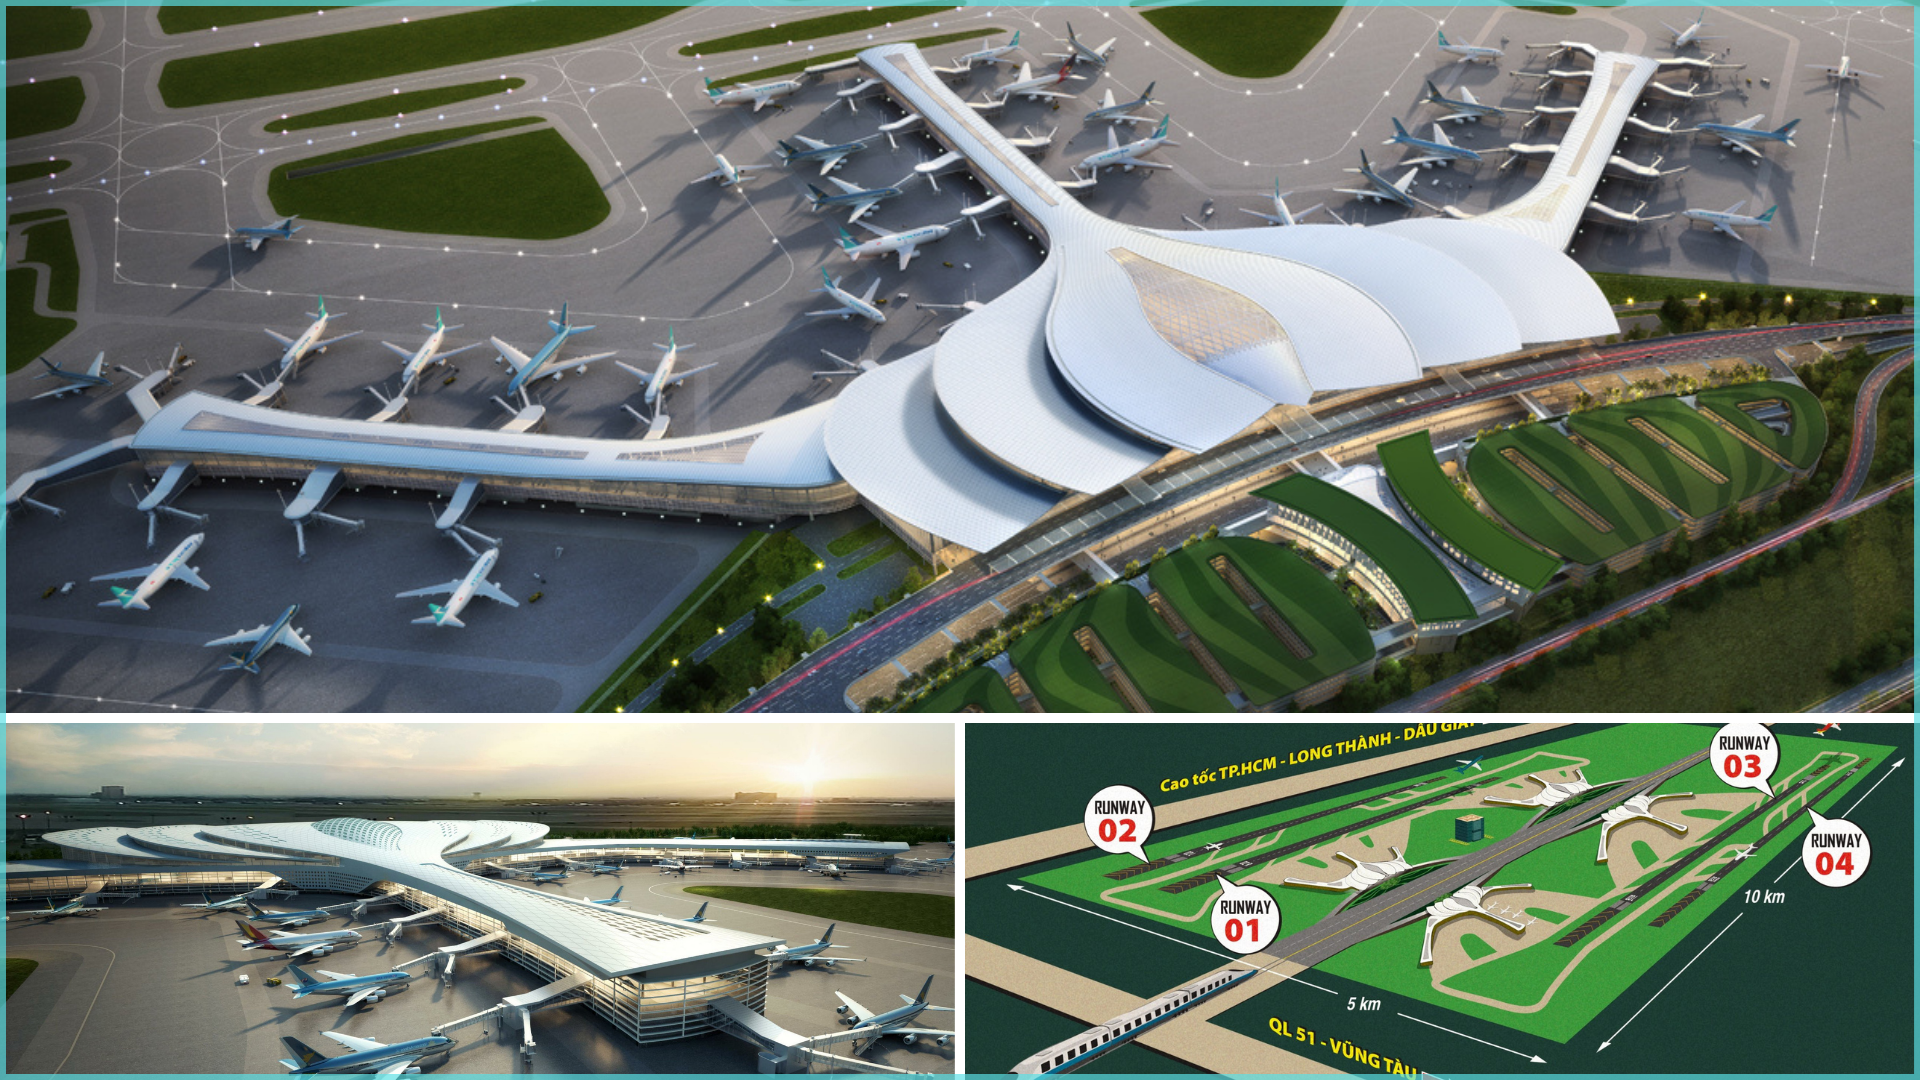 Chính phủ quyết đẩy nhanh tiến độ giai đoạn 1 sân bay Long Thành chào mừng Đại hội Đảng XIV